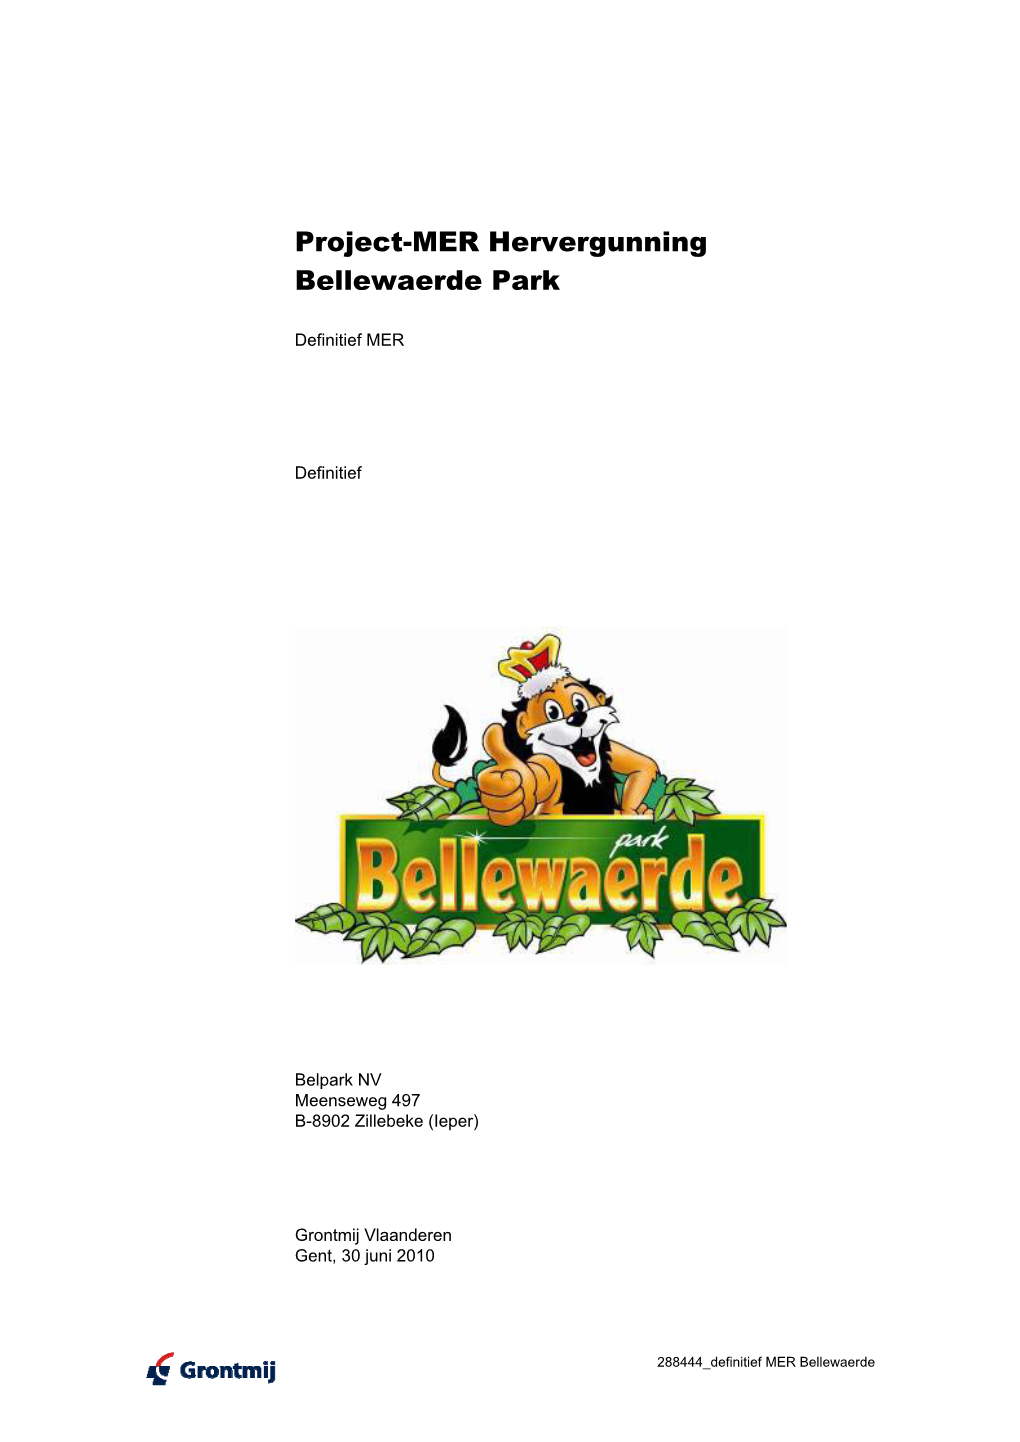 Project-MER Hervergunning Bellewaerde Park